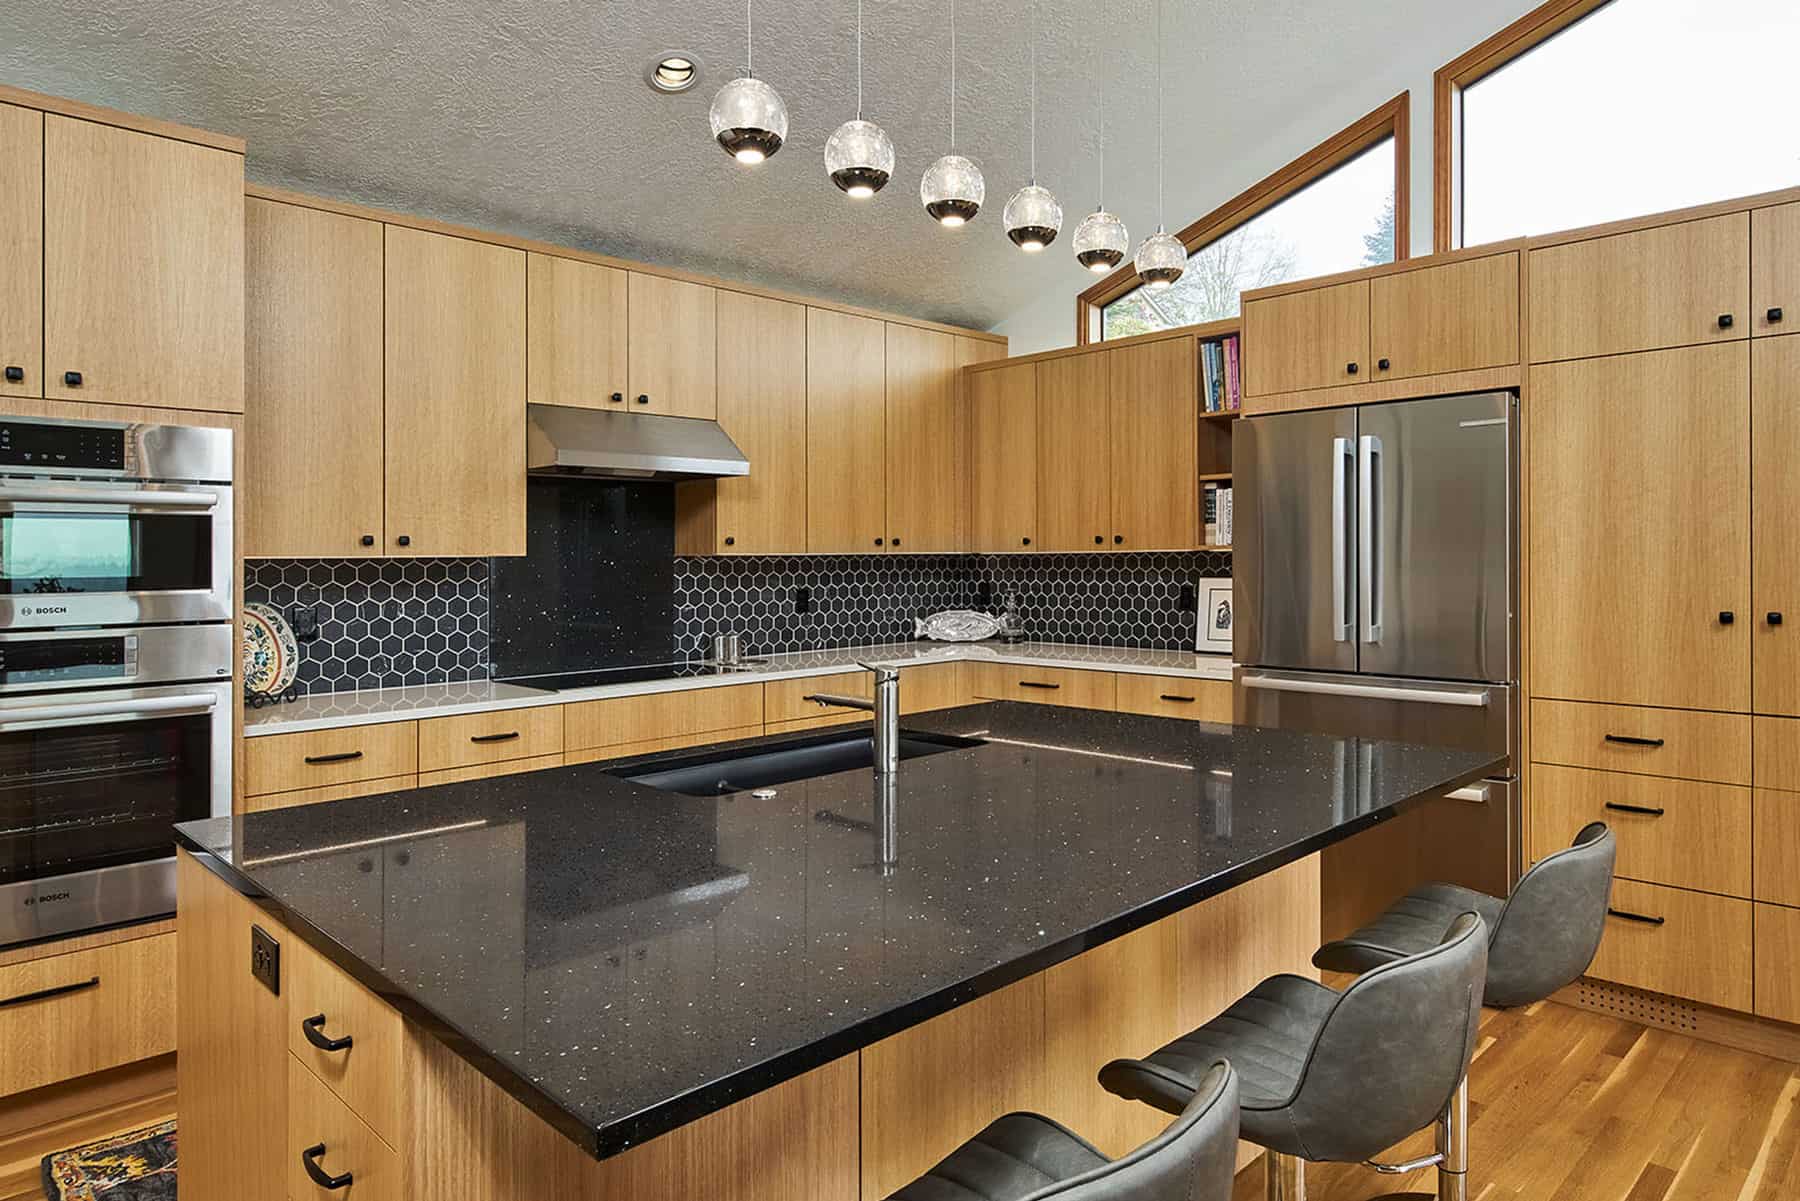 https://www.neilkelly.com/wp-content/uploads/2021/01/Neil-Kelly-View-Point-Terrance-warm-modern-kitchen-remodel-Portland.jpg